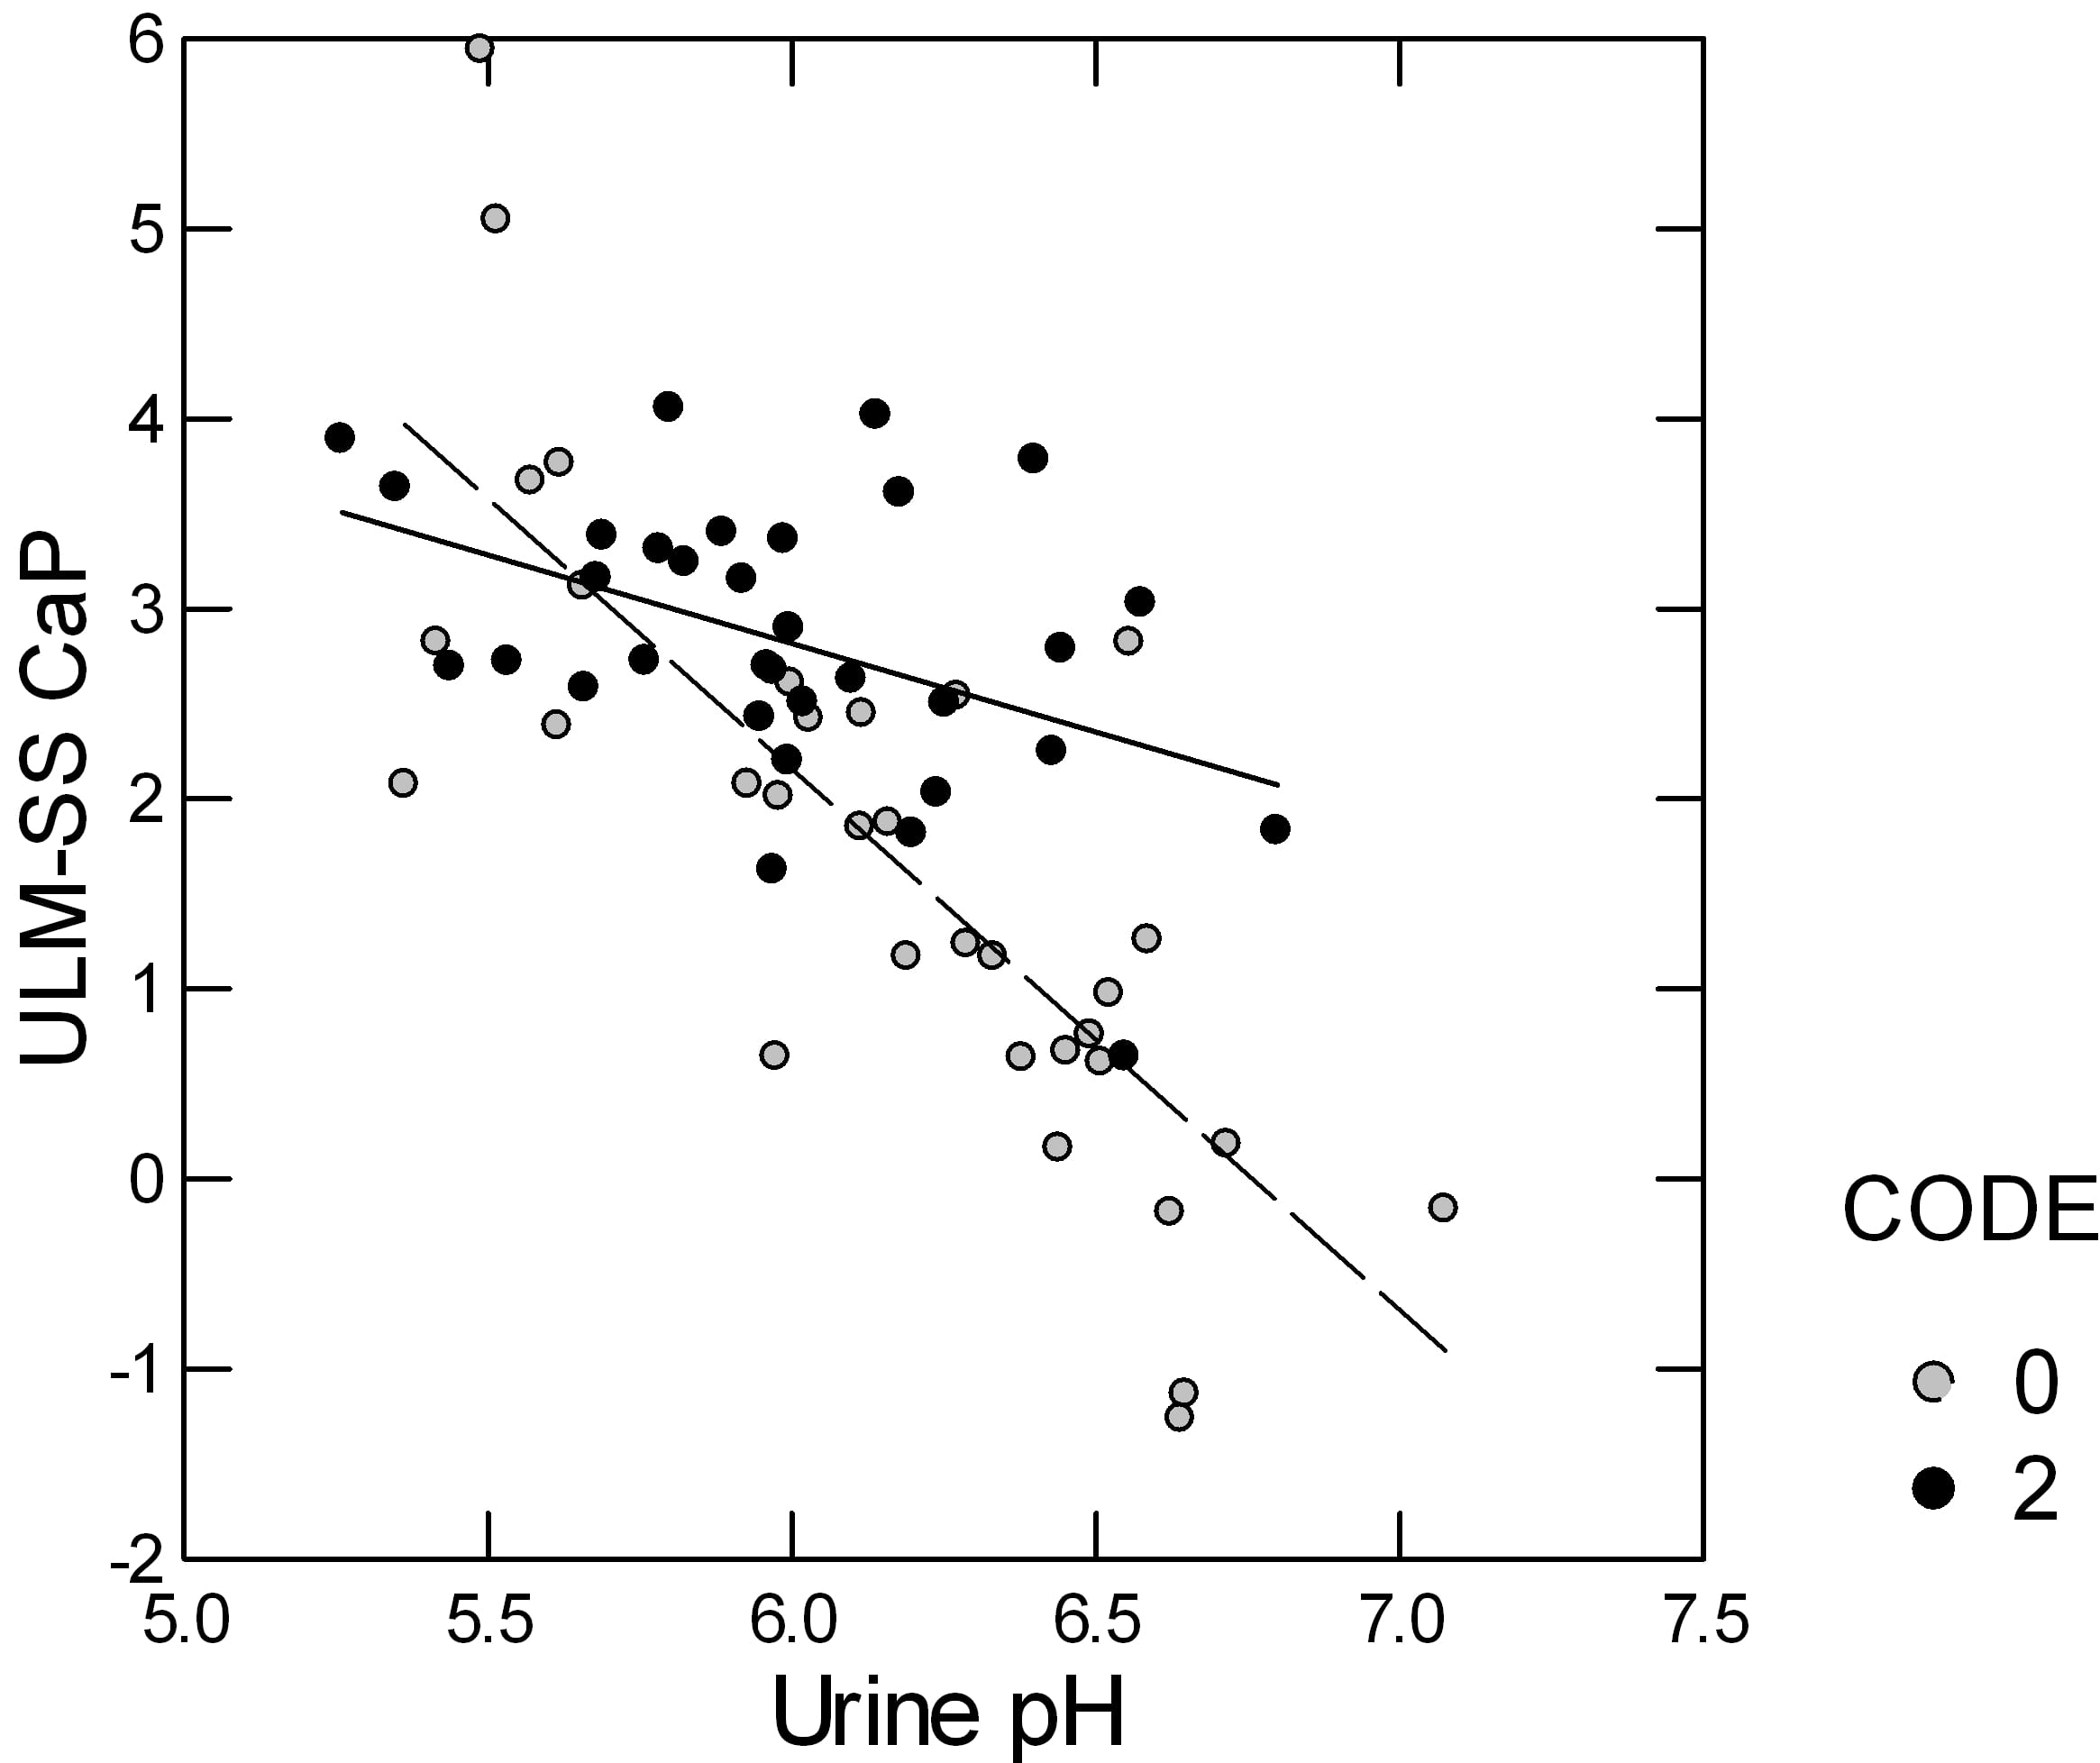 delcap vs urine pH